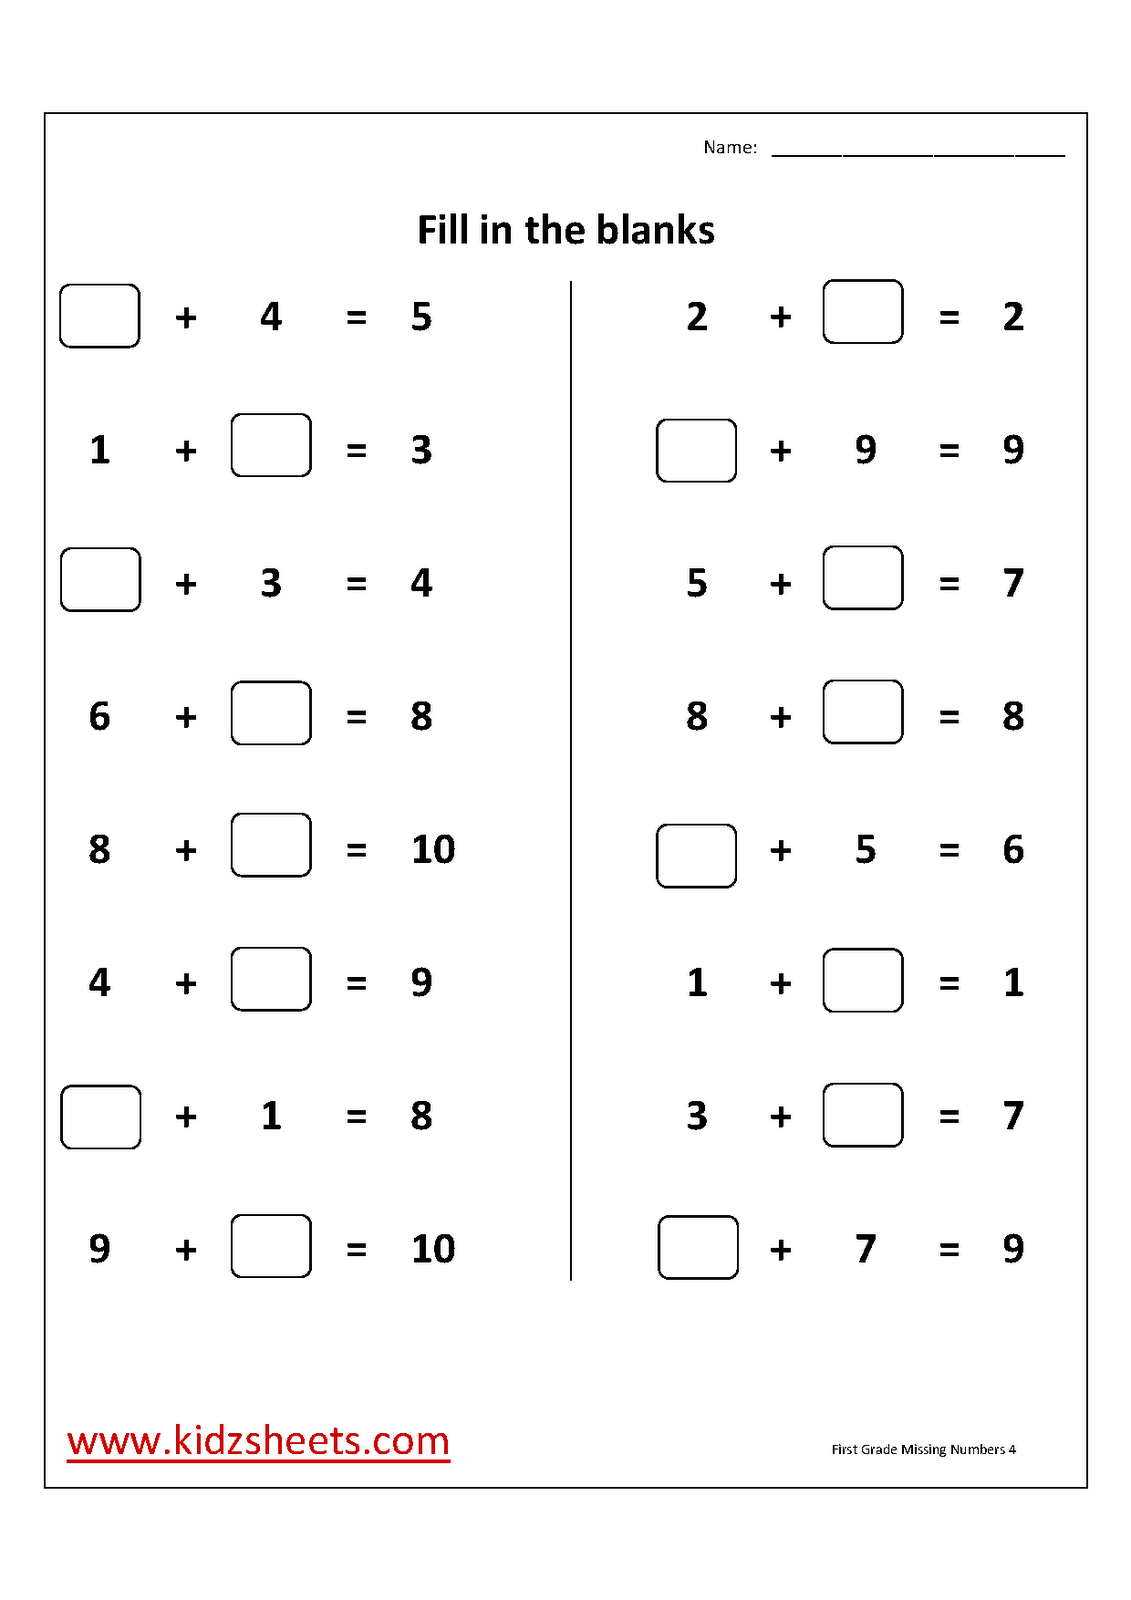 missing-number-addition-worksheets-1st-grade-mark-bullington-s-money-worksheets